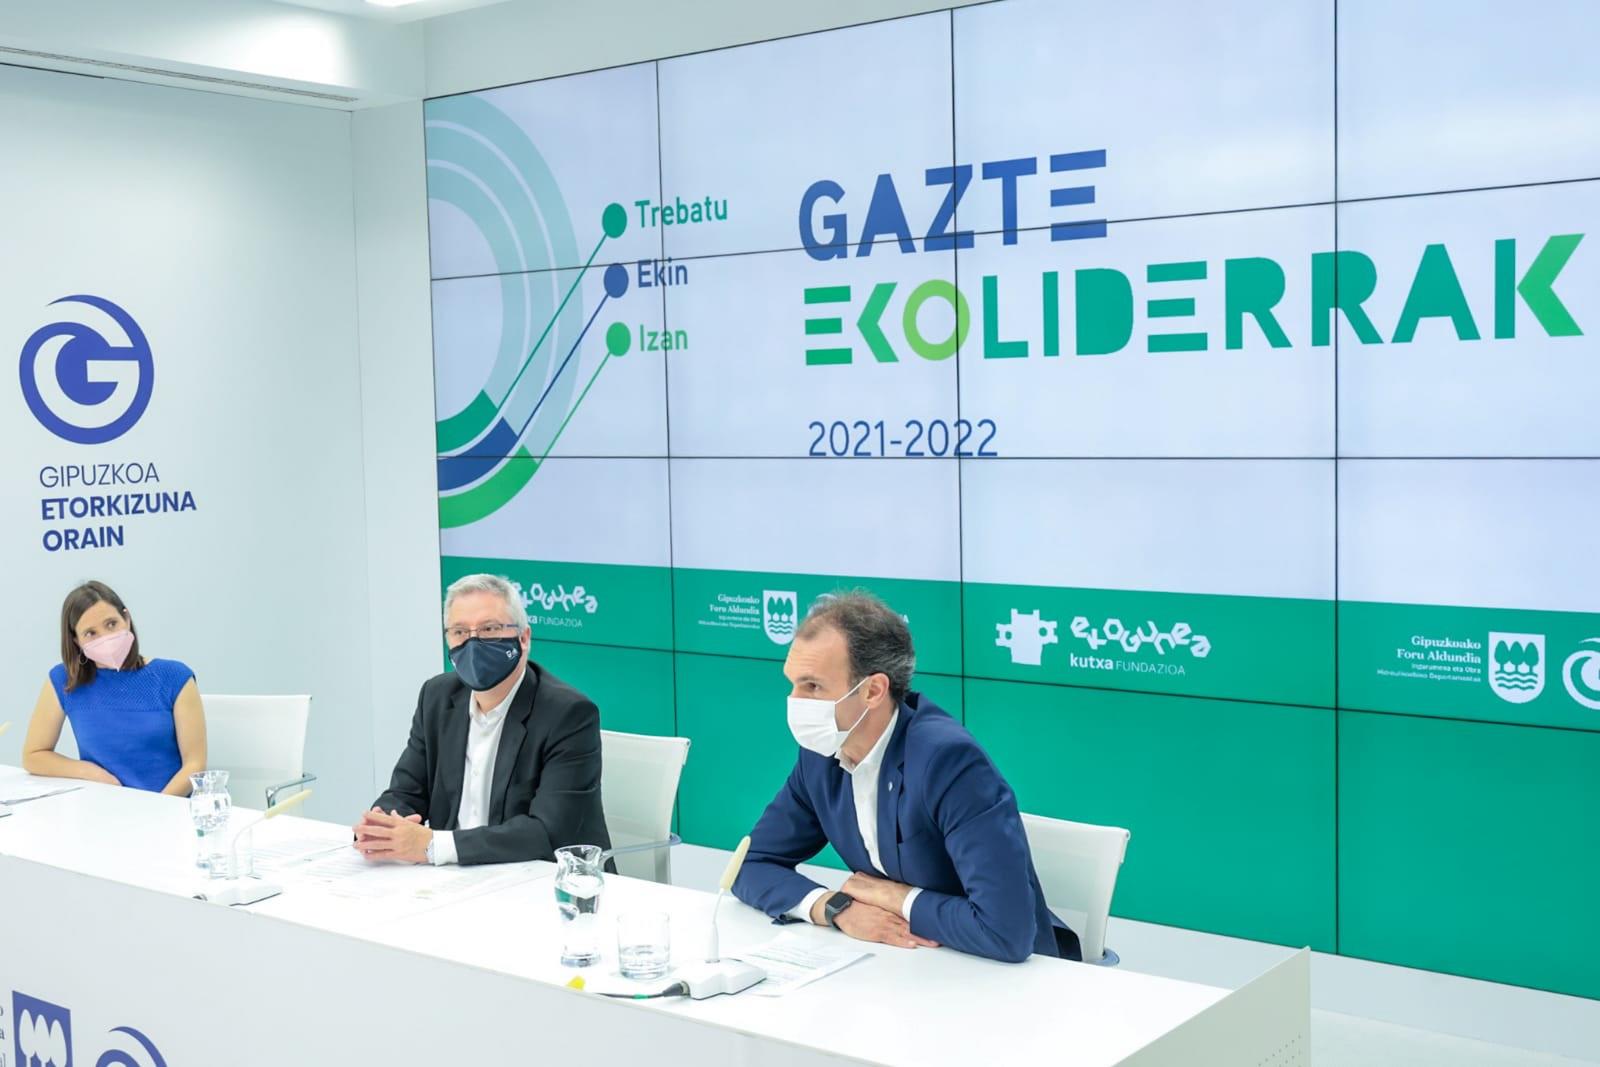 Gazte Ekoliderrak, un programa innovador que tiene como objetivo formar a jóvenes en sostenibilidad y liderazgo